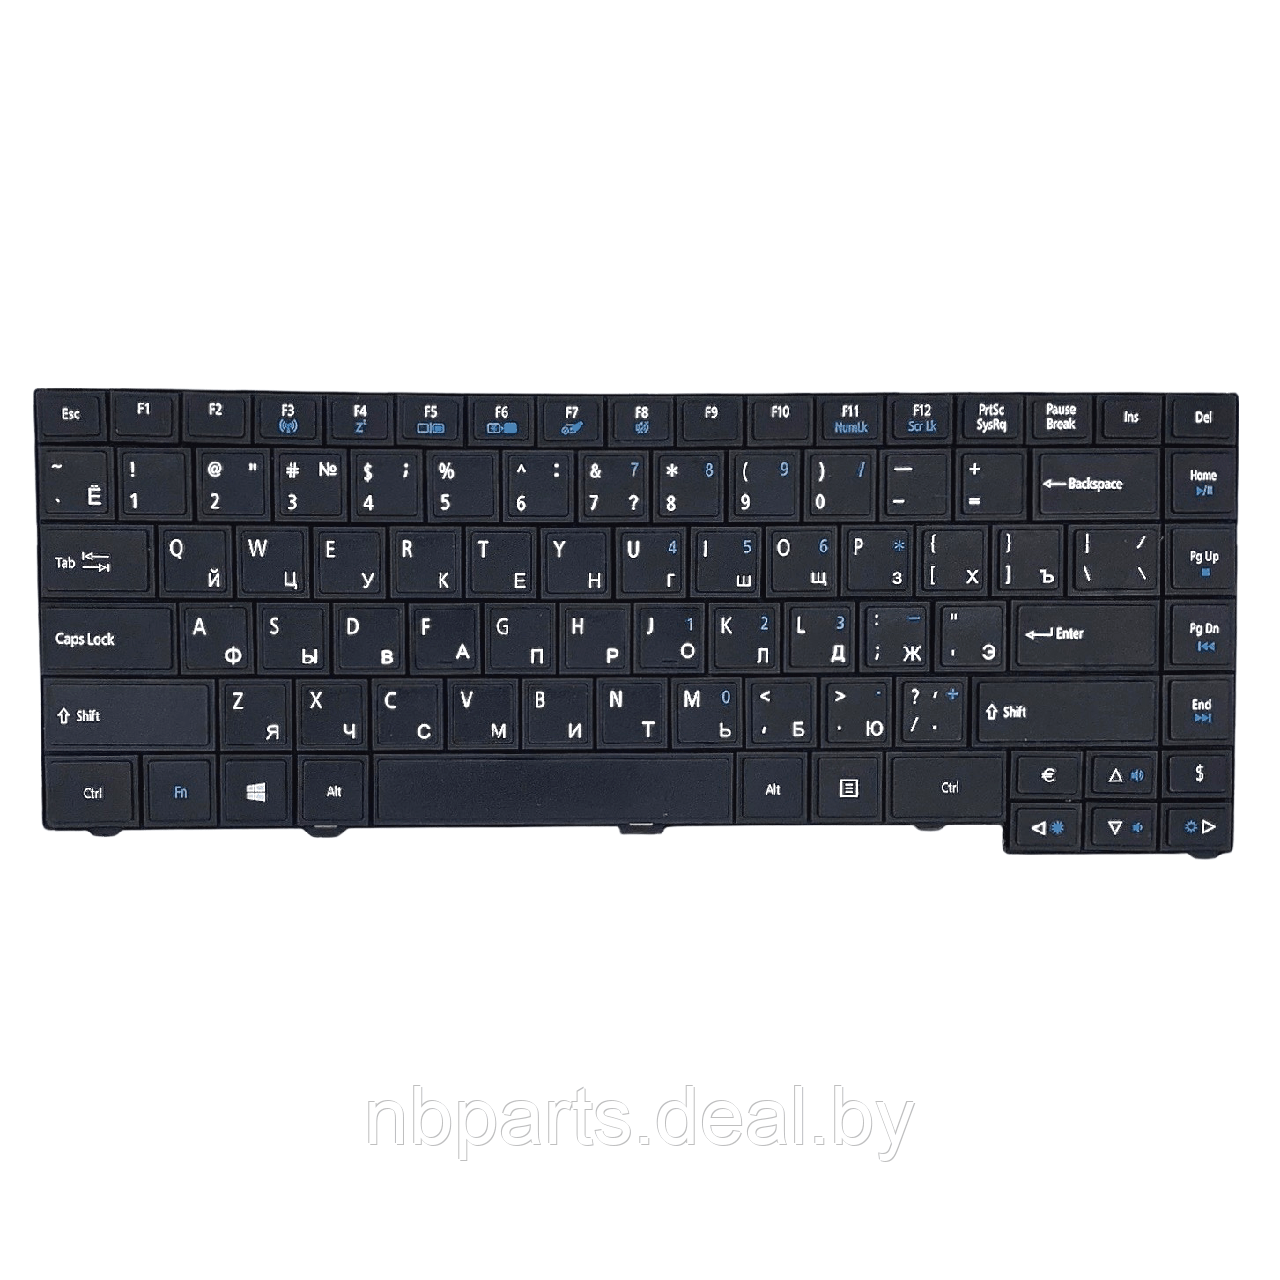 Клавиатура для ноутбука ACER TravelMate 4750, чёрная, RU